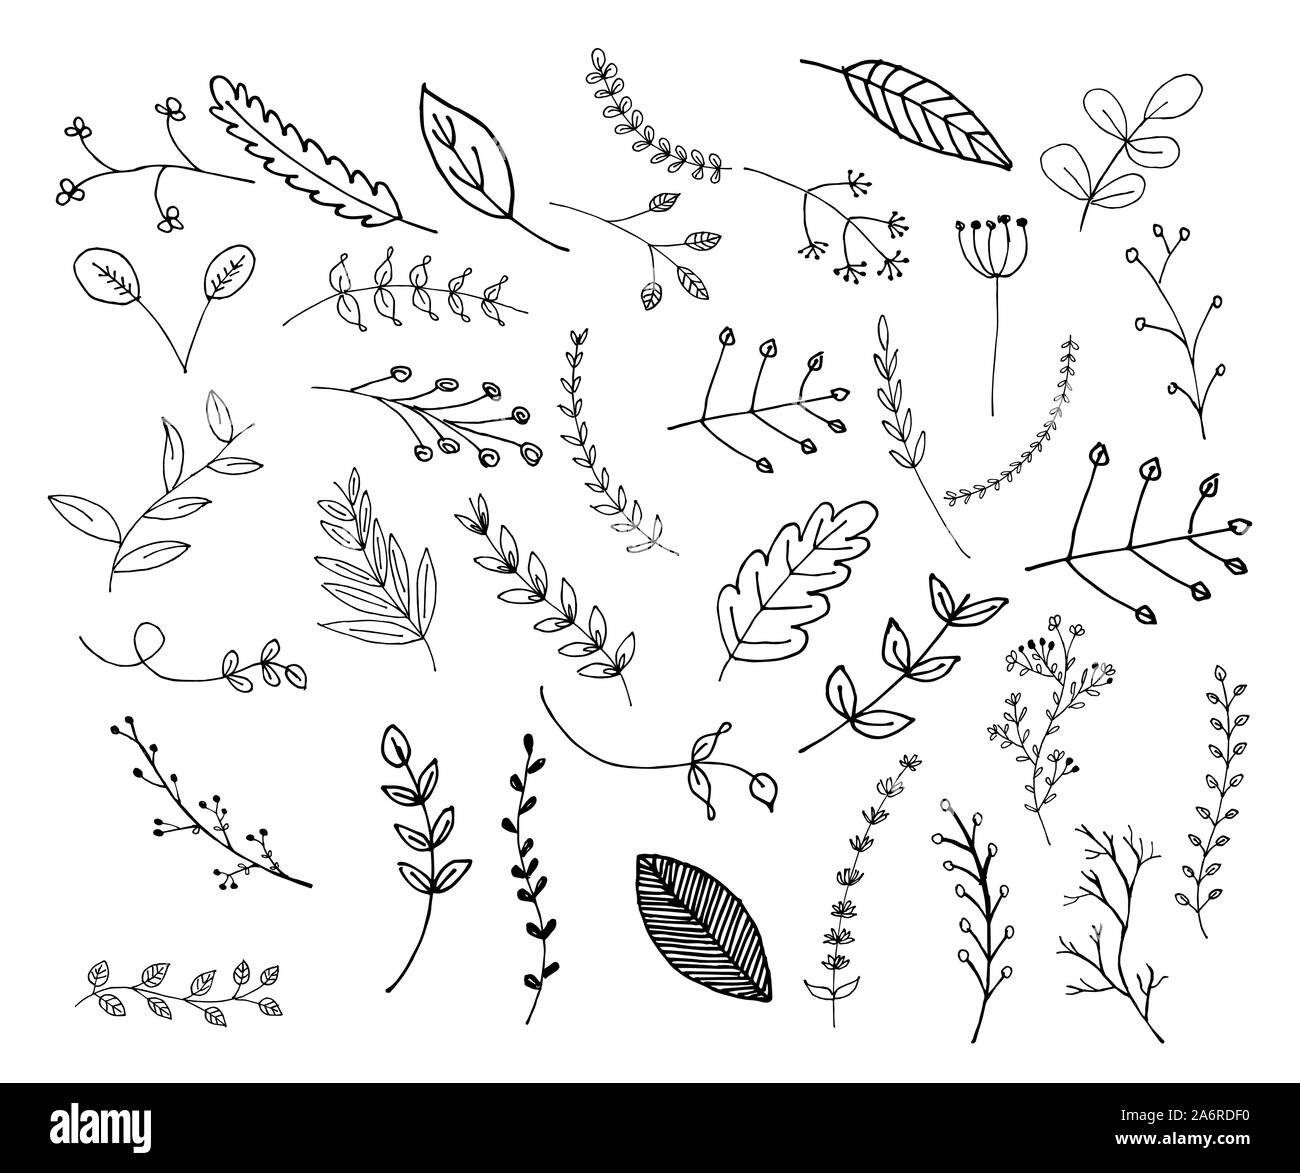 Dibujadas a mano las hojas y ramas, elementos florales, botánicos ilustraciones y vectores Ilustración del Vector